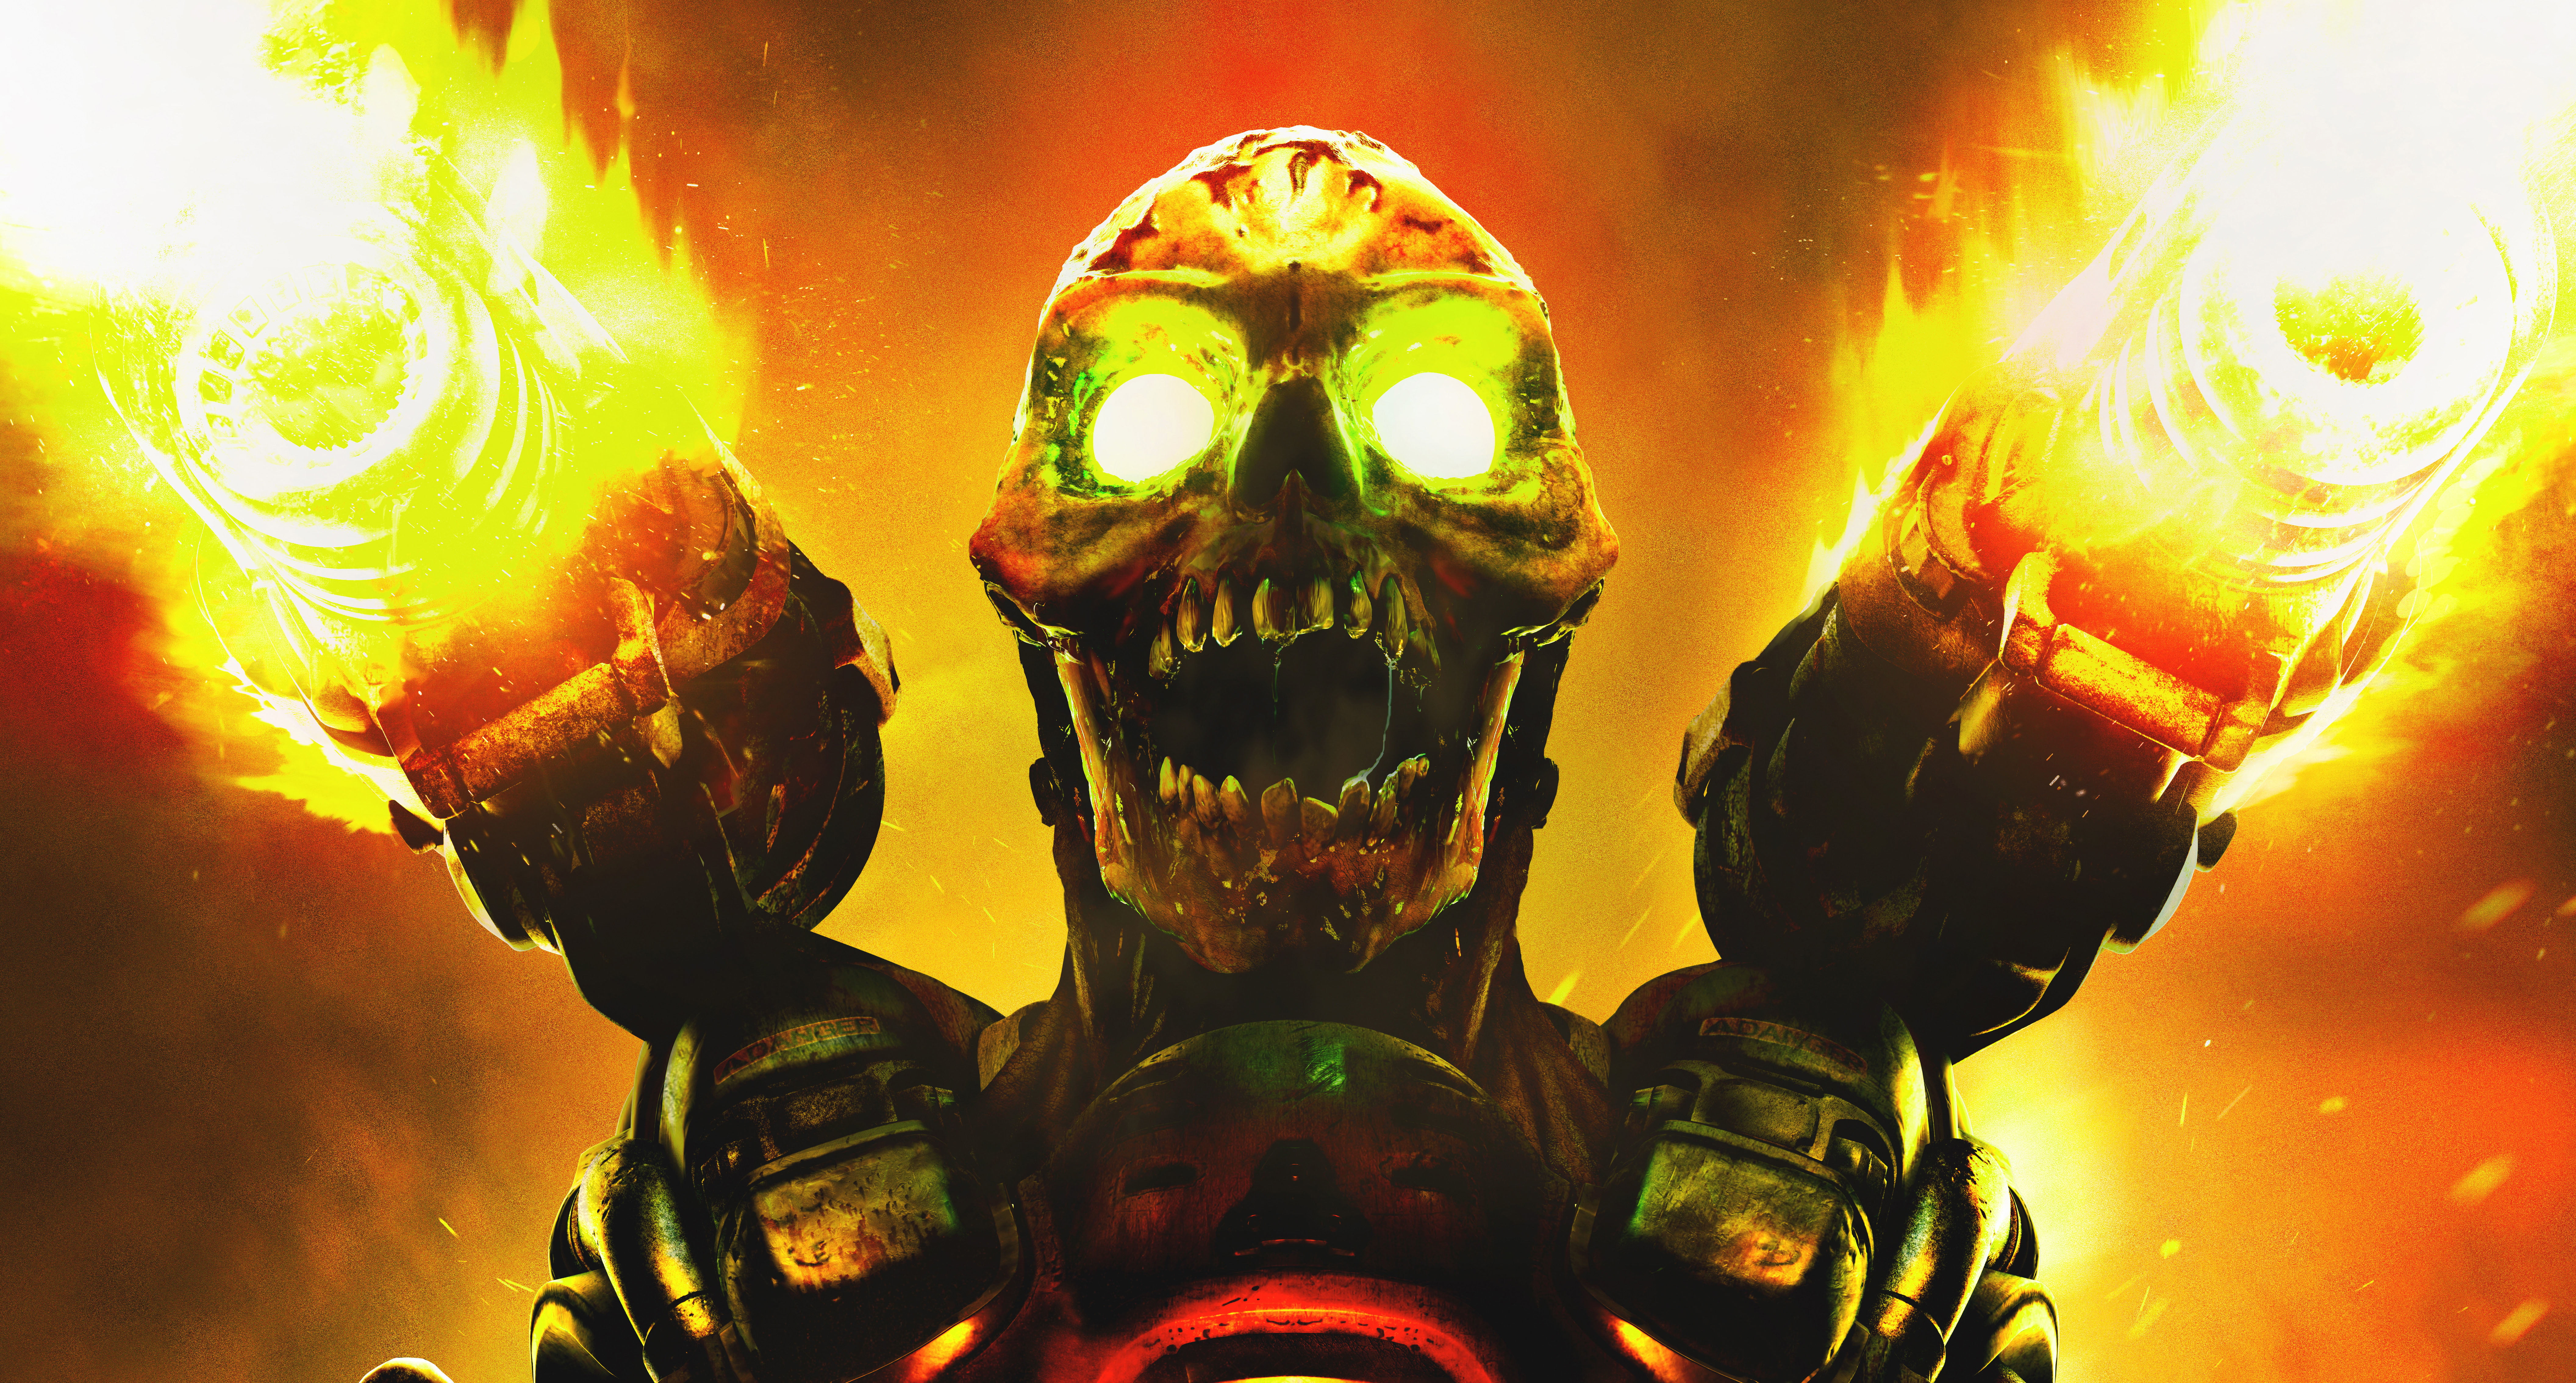 2016 Doom Revenant wallpaper, fire, skull, monster, gun, teeth